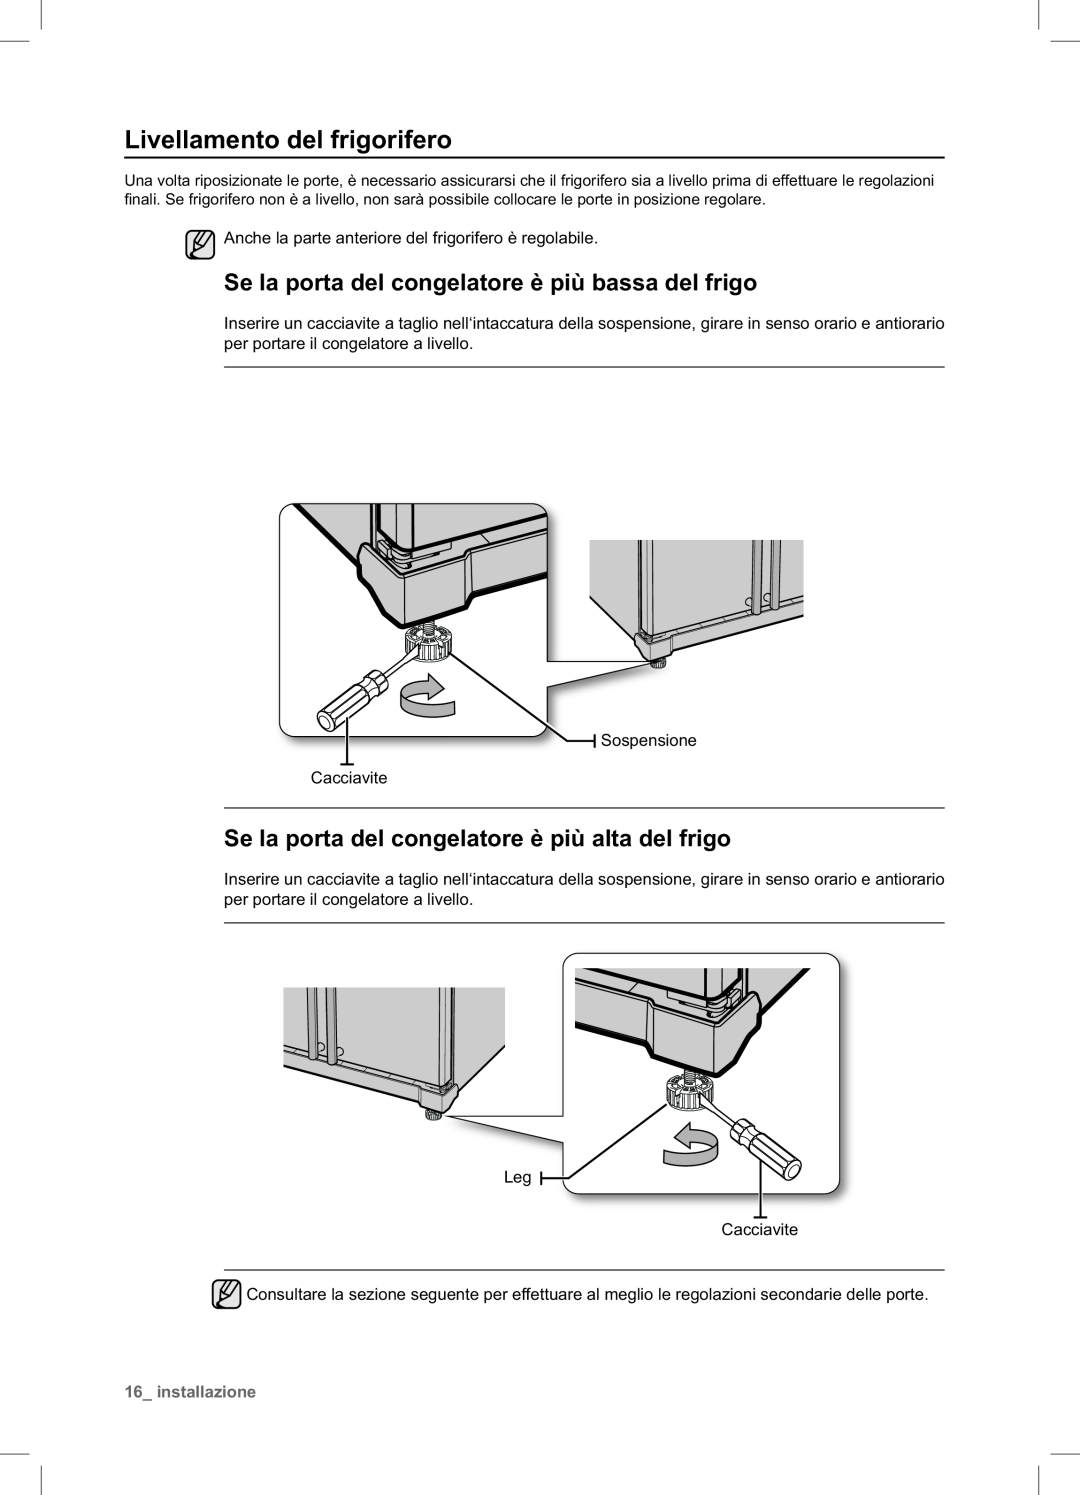 Samsung RSA1NTPE1/XES manual Livellamento del frigorifero, Se la porta del congelatore è più bassa del frigo, installazione 